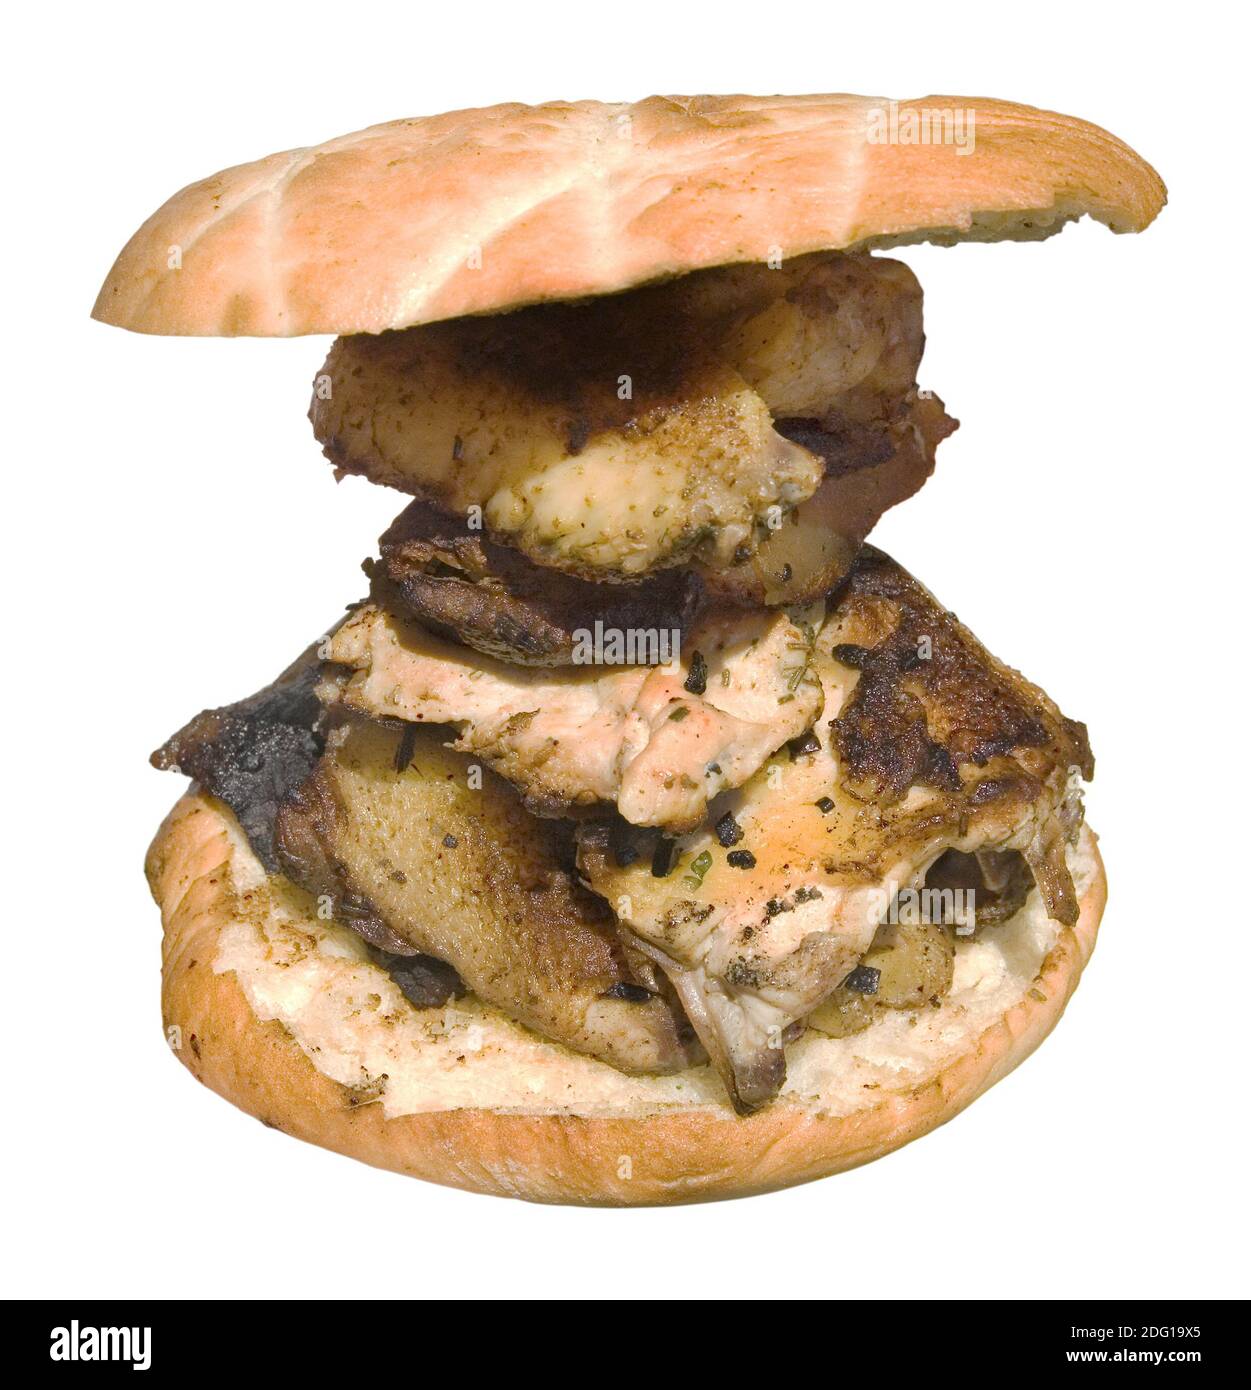 Sandwich cutout Stock Photo